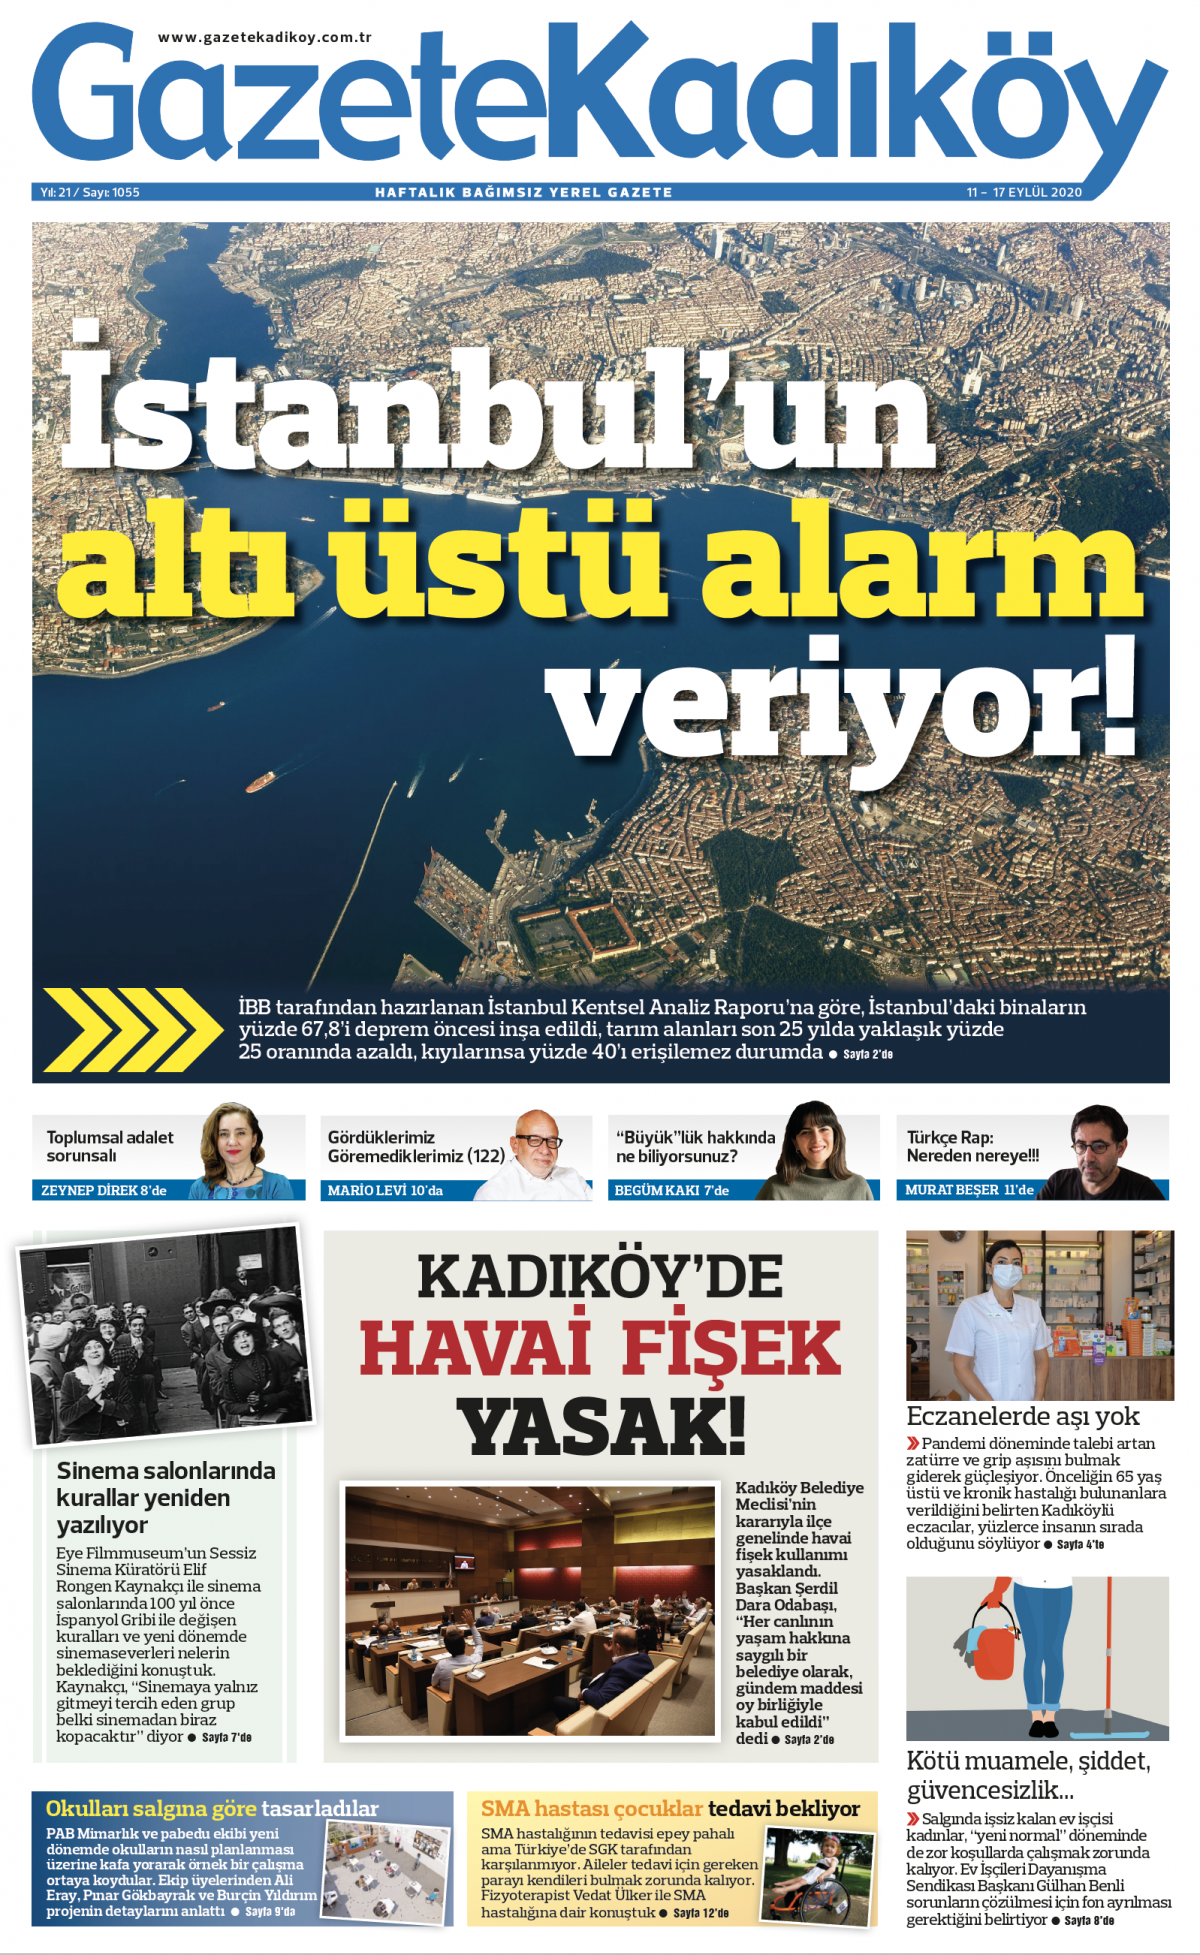 Gazete Kadıköy - 1055. Sayı